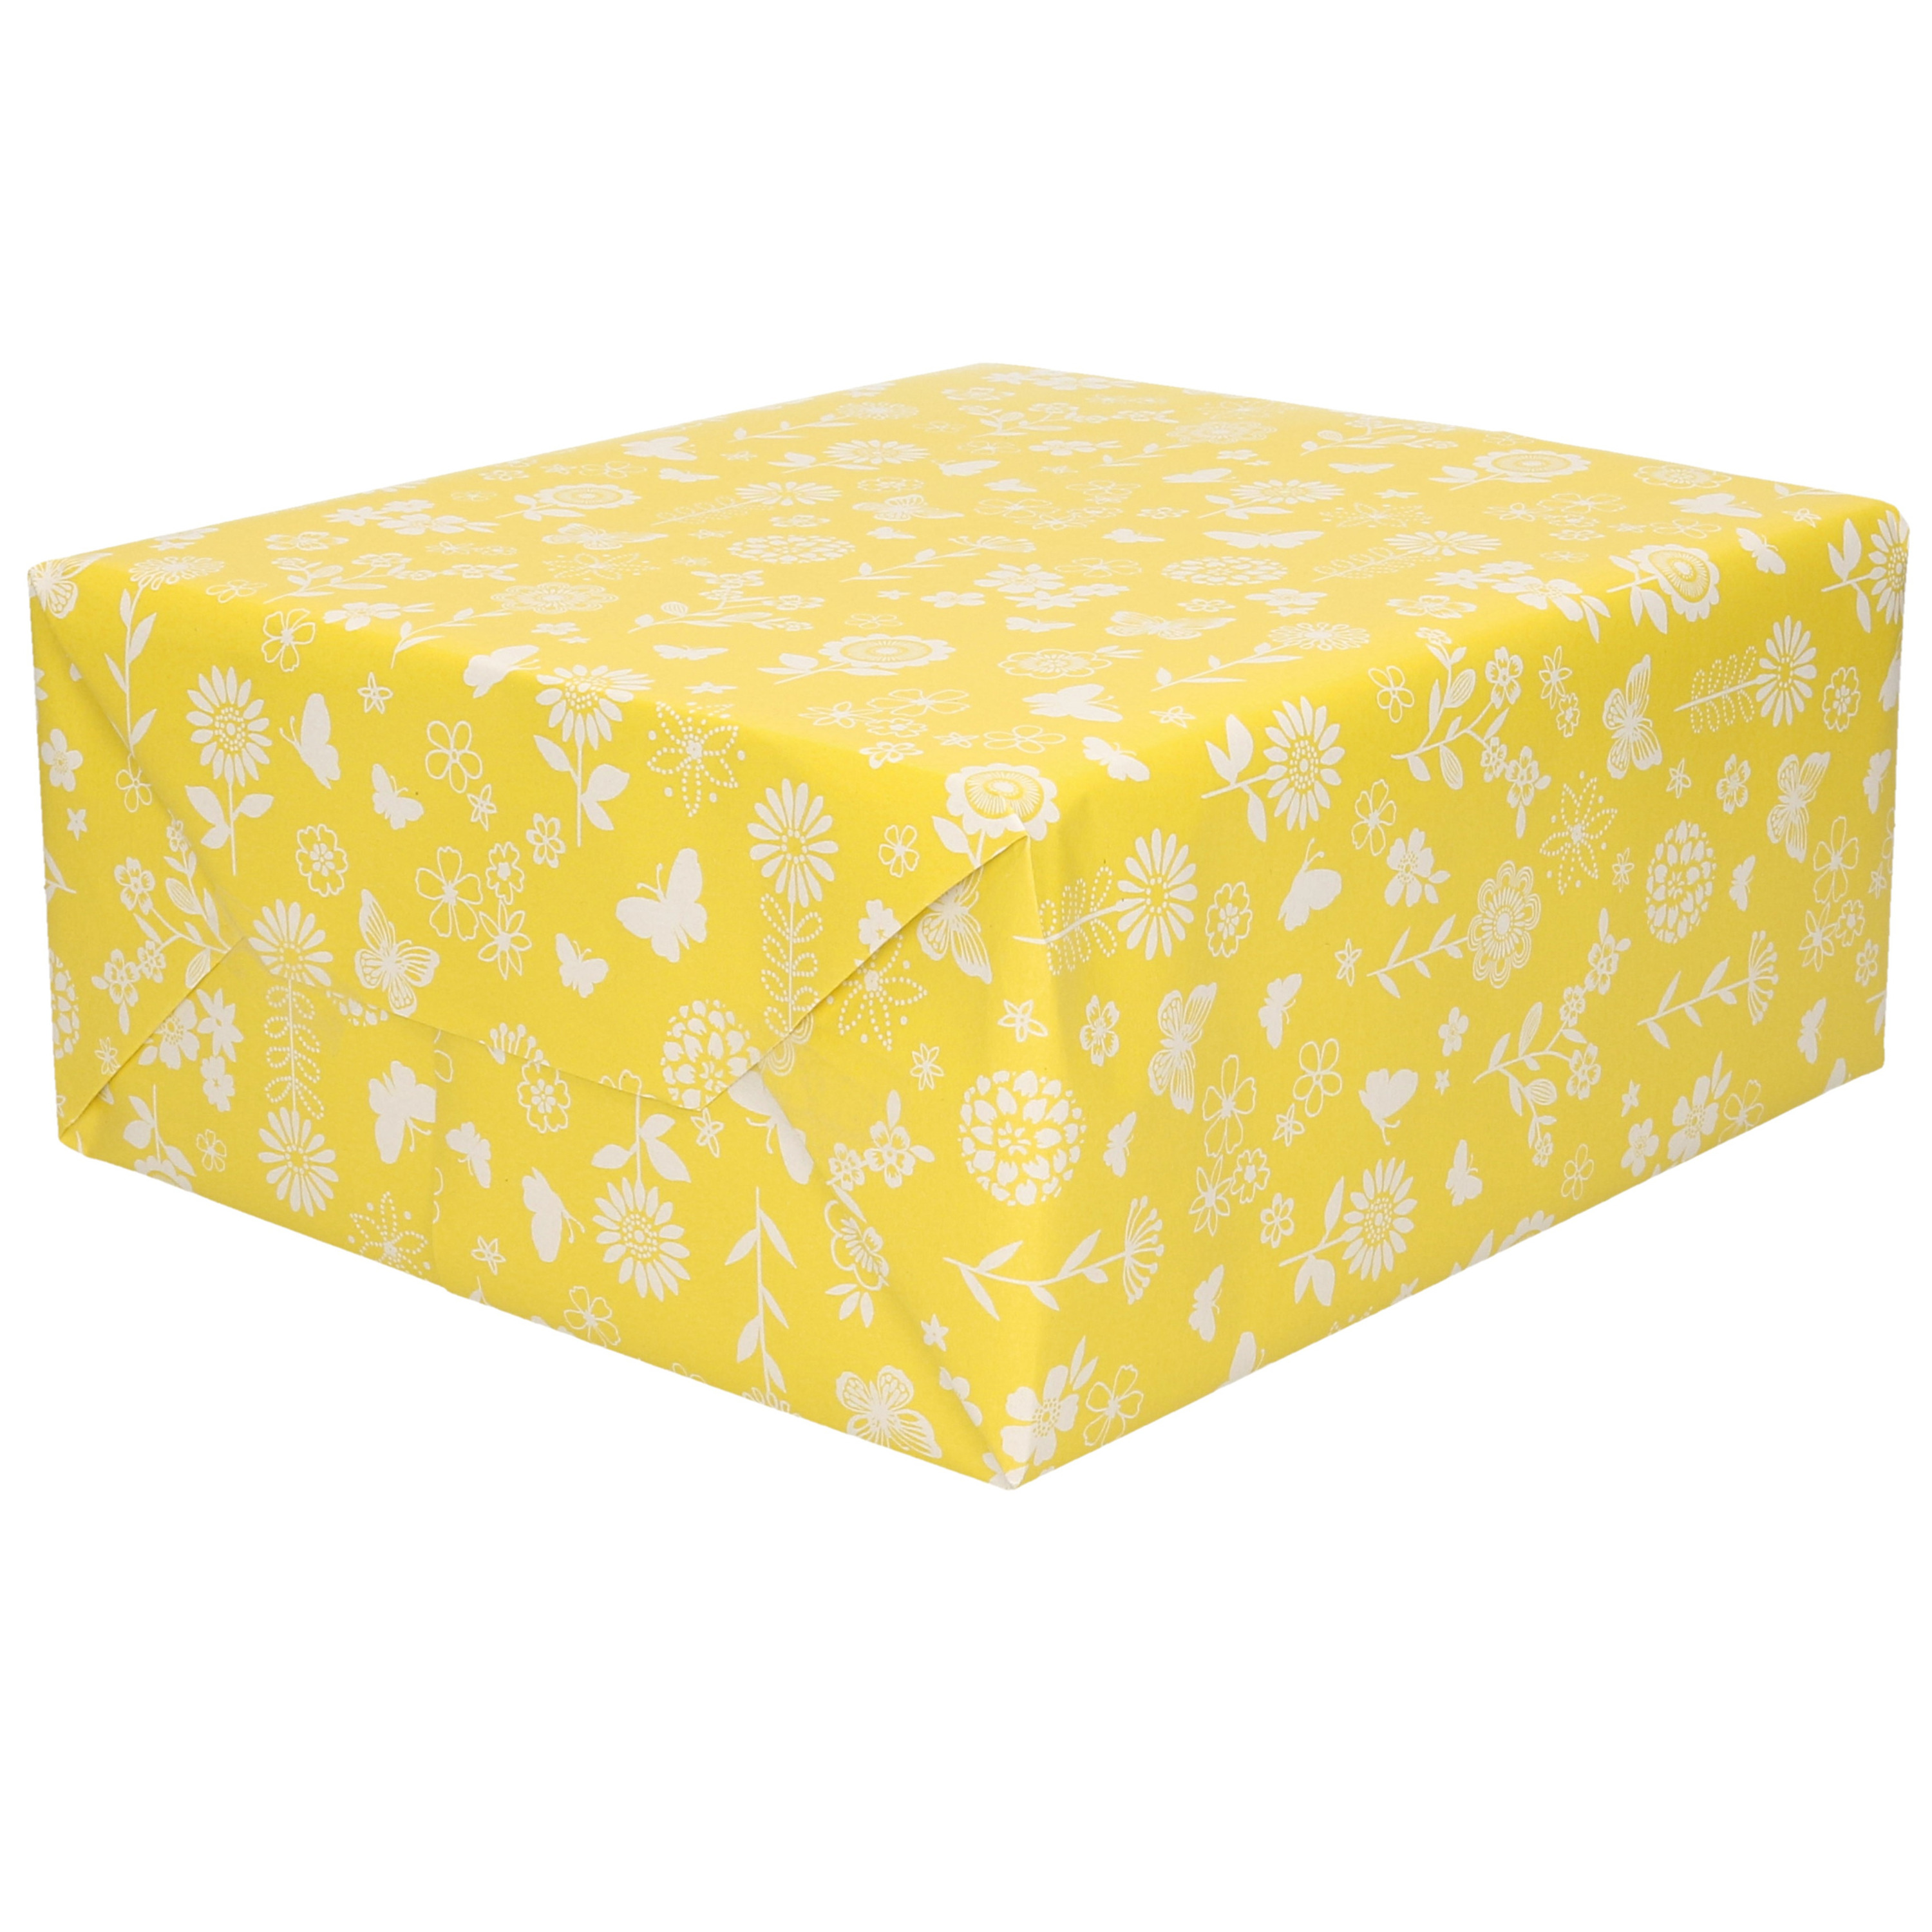 1x Rollen Inpakpapier/cadeaupapier geel met witte bloemen en vlinders 200 x 70 cm